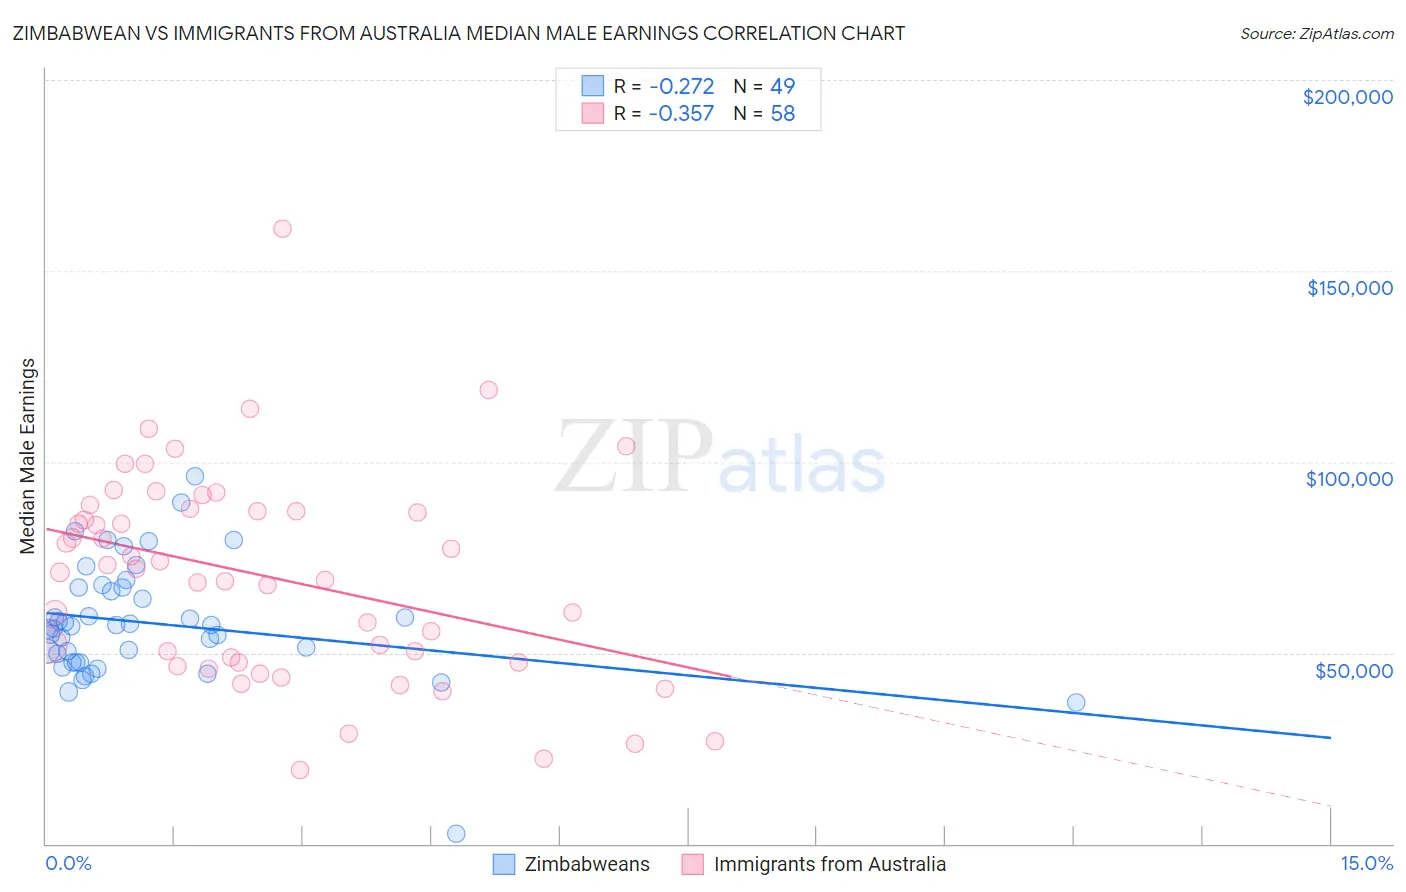 Zimbabwean vs Immigrants from Australia Median Male Earnings